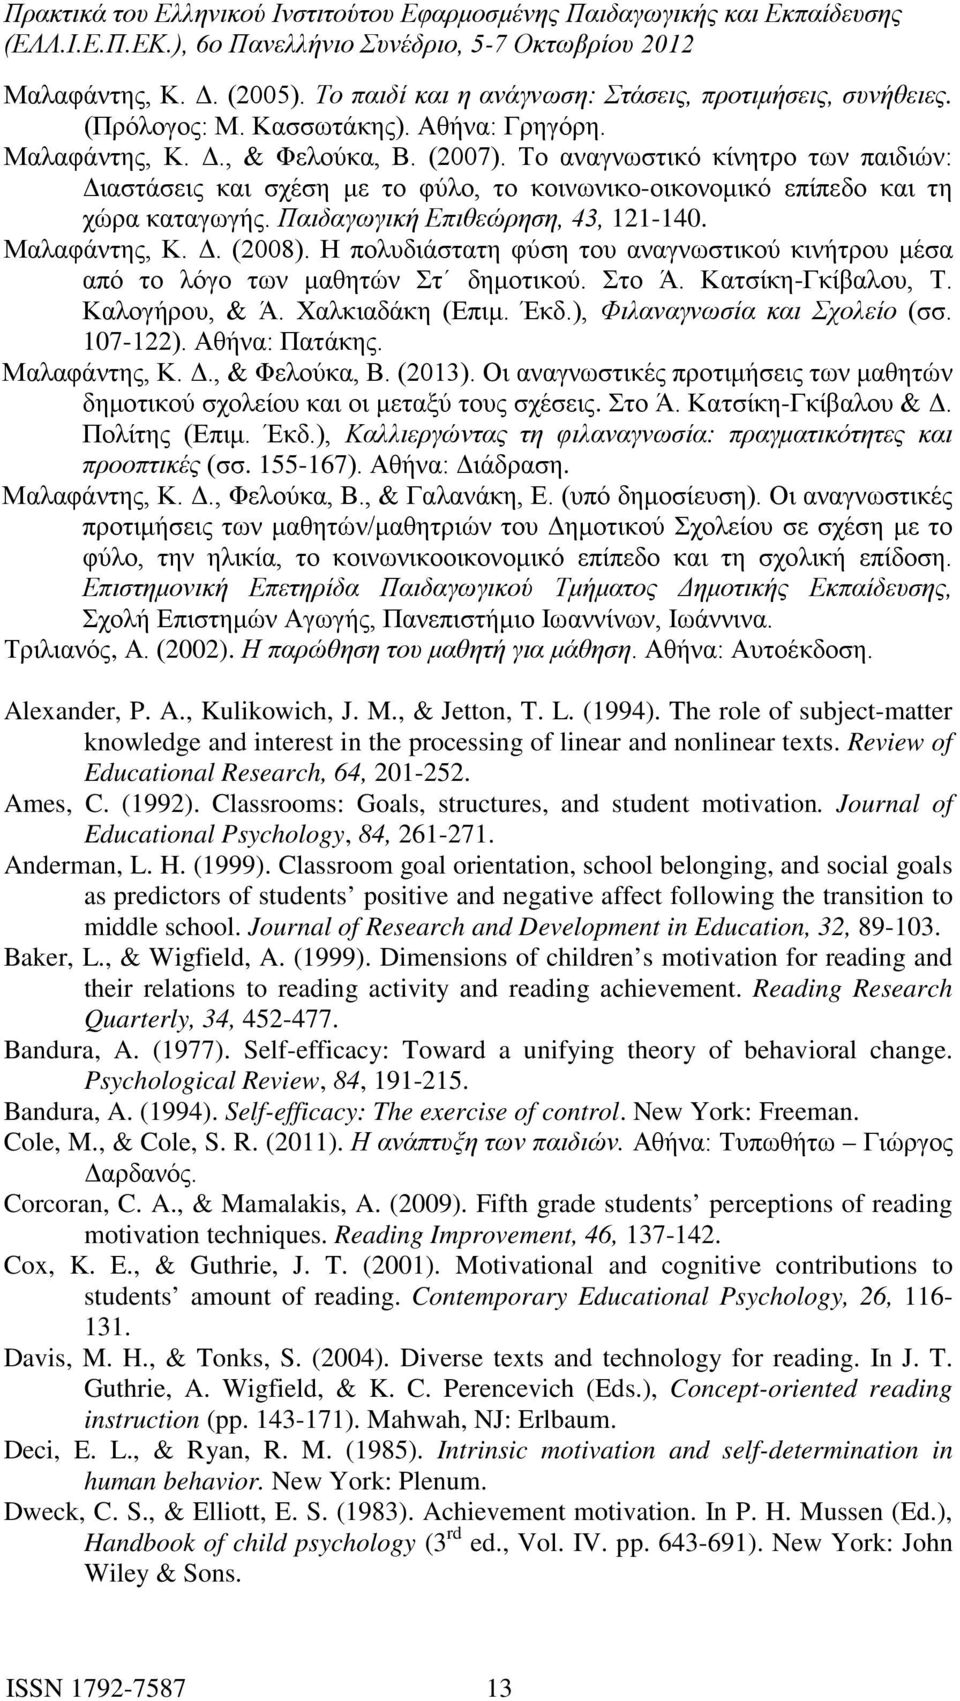 Η πολυδιάστατη φύση του αναγνωστικού κινήτρου μέσα από το λόγο των μαθητών Στ δημοτικού. Στο Ά. Κατσίκη-Γκίβαλου, Τ. Καλογήρου, & Ά. Χαλκιαδάκη (Επιμ. Έκδ.), Φιλαναγνωσία και Σχολείο (σσ. 107-122).